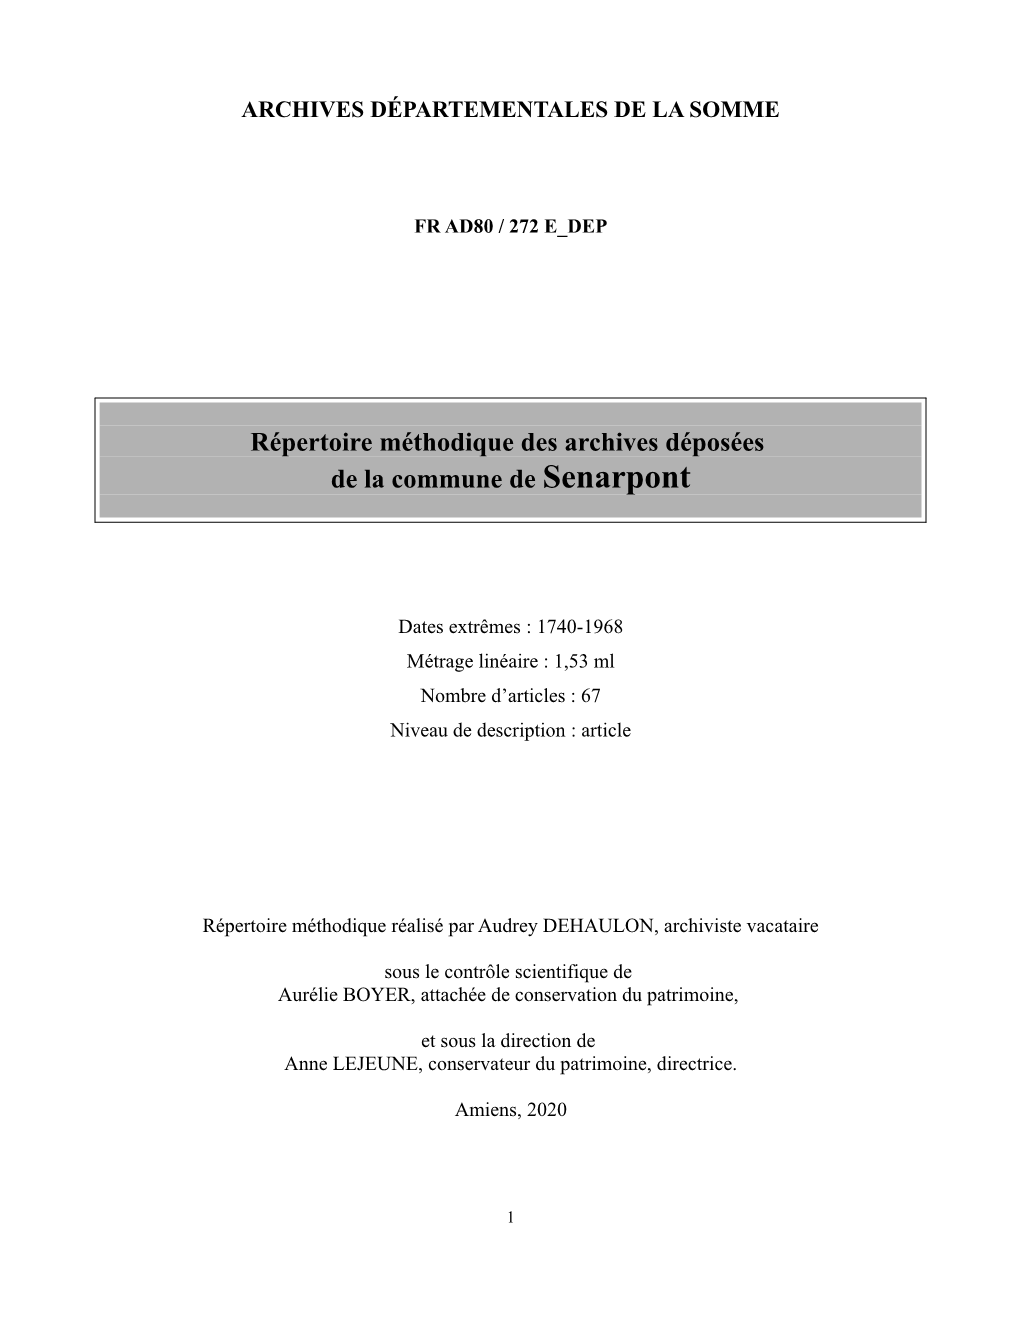 Répertoire Méthodique Des Archives Déposées De La Commune De Senarpont